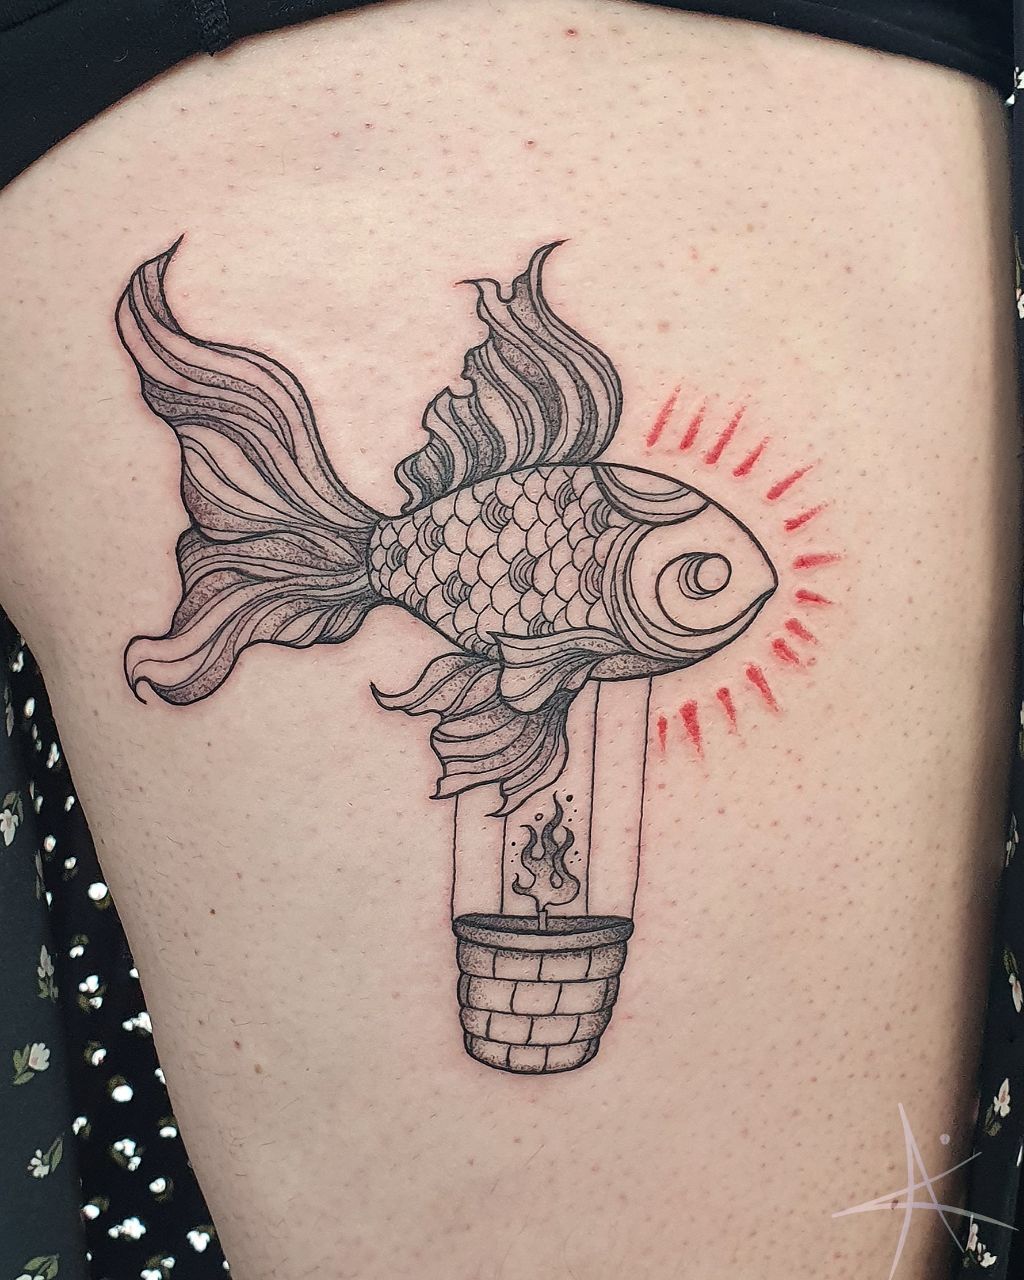 Tattoo uploaded by Tattoodo • Galaxy fish. Tattoo by Saegeem #saegeemtattoo  #fishtattoos #linework #minimal #illustrative #watercolor #small #cute  #saturn #stars #moon #fish #rainbow #dotwork • Tattoodo